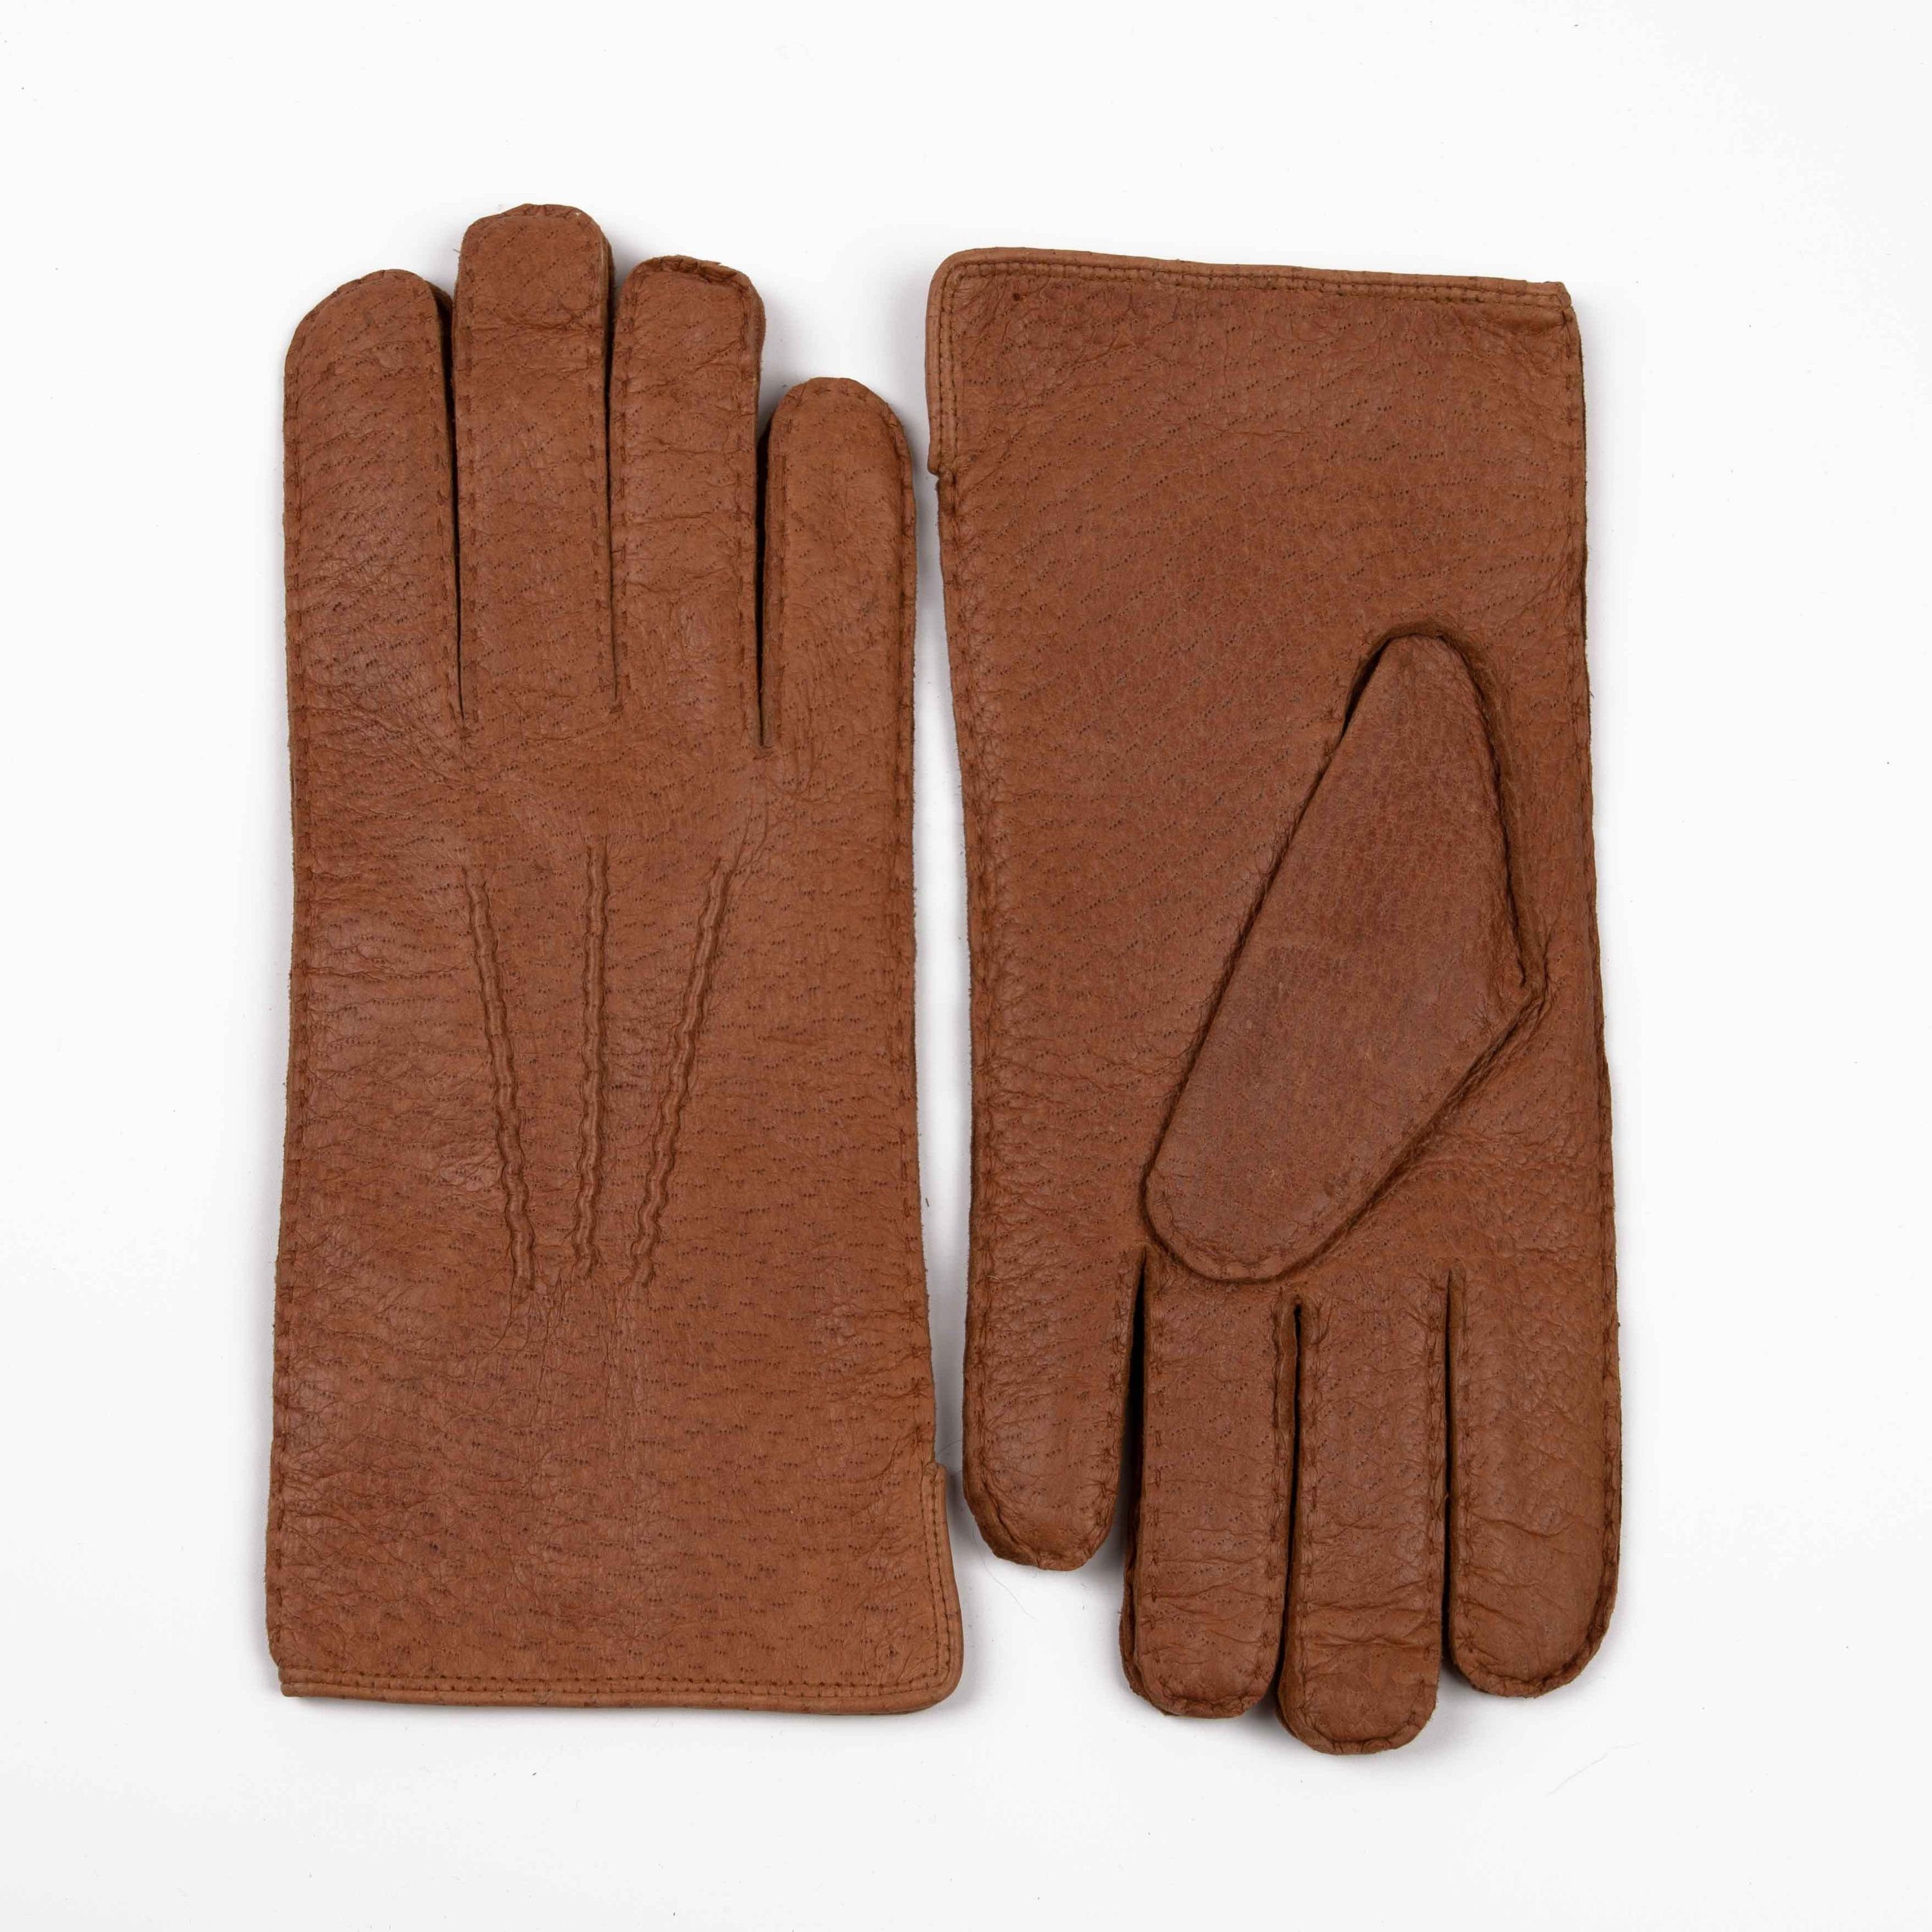 Hand Gewand by Weikert Lederhandschuhe SIR HELMUT- Peccary Lederhandschuhe mit Alpaka gefüttert Cork